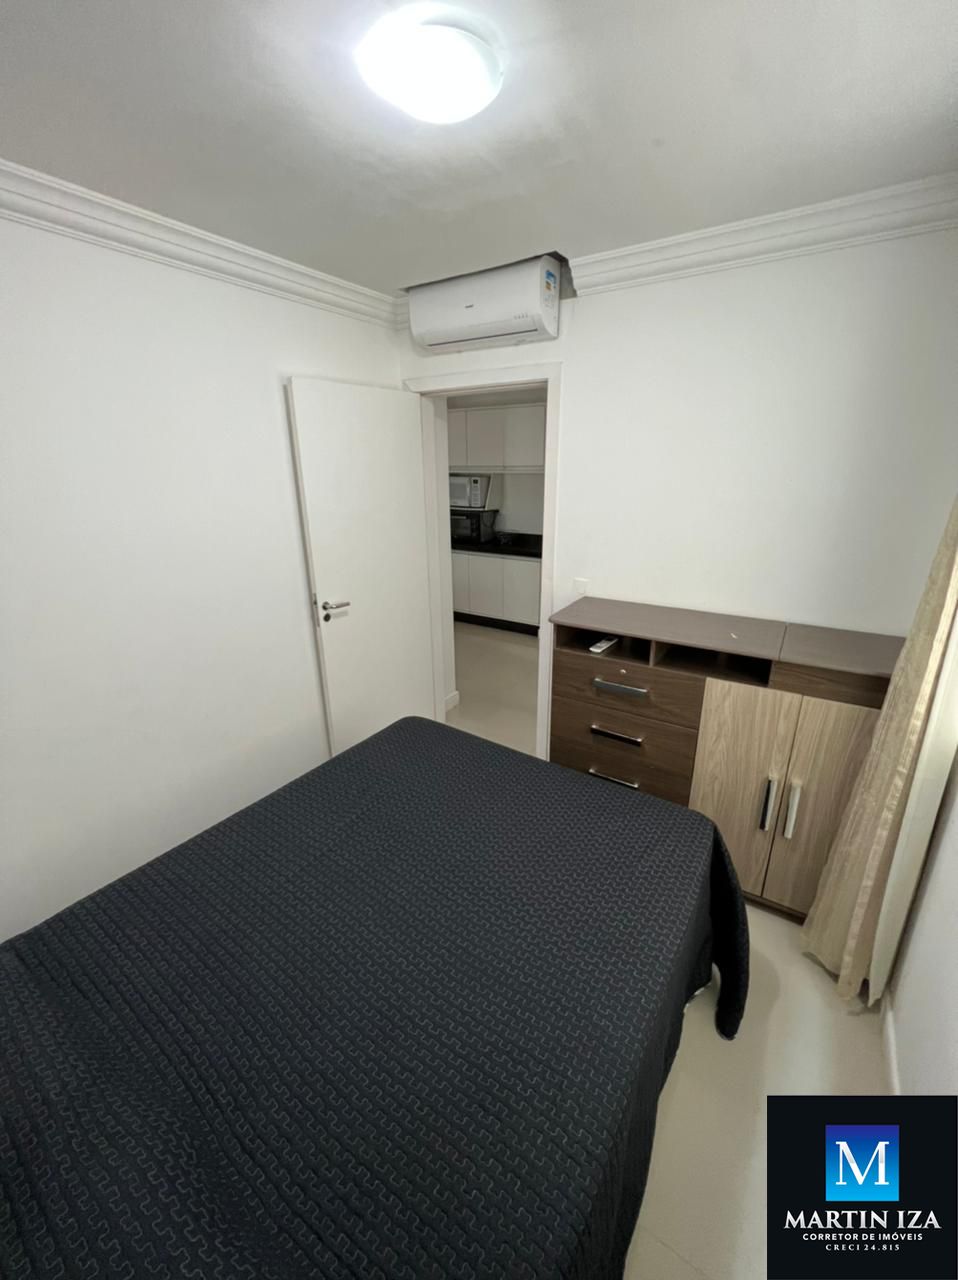 Apartamento com 2 Dormitórios para alugar, 55 m² por R$ 180,00